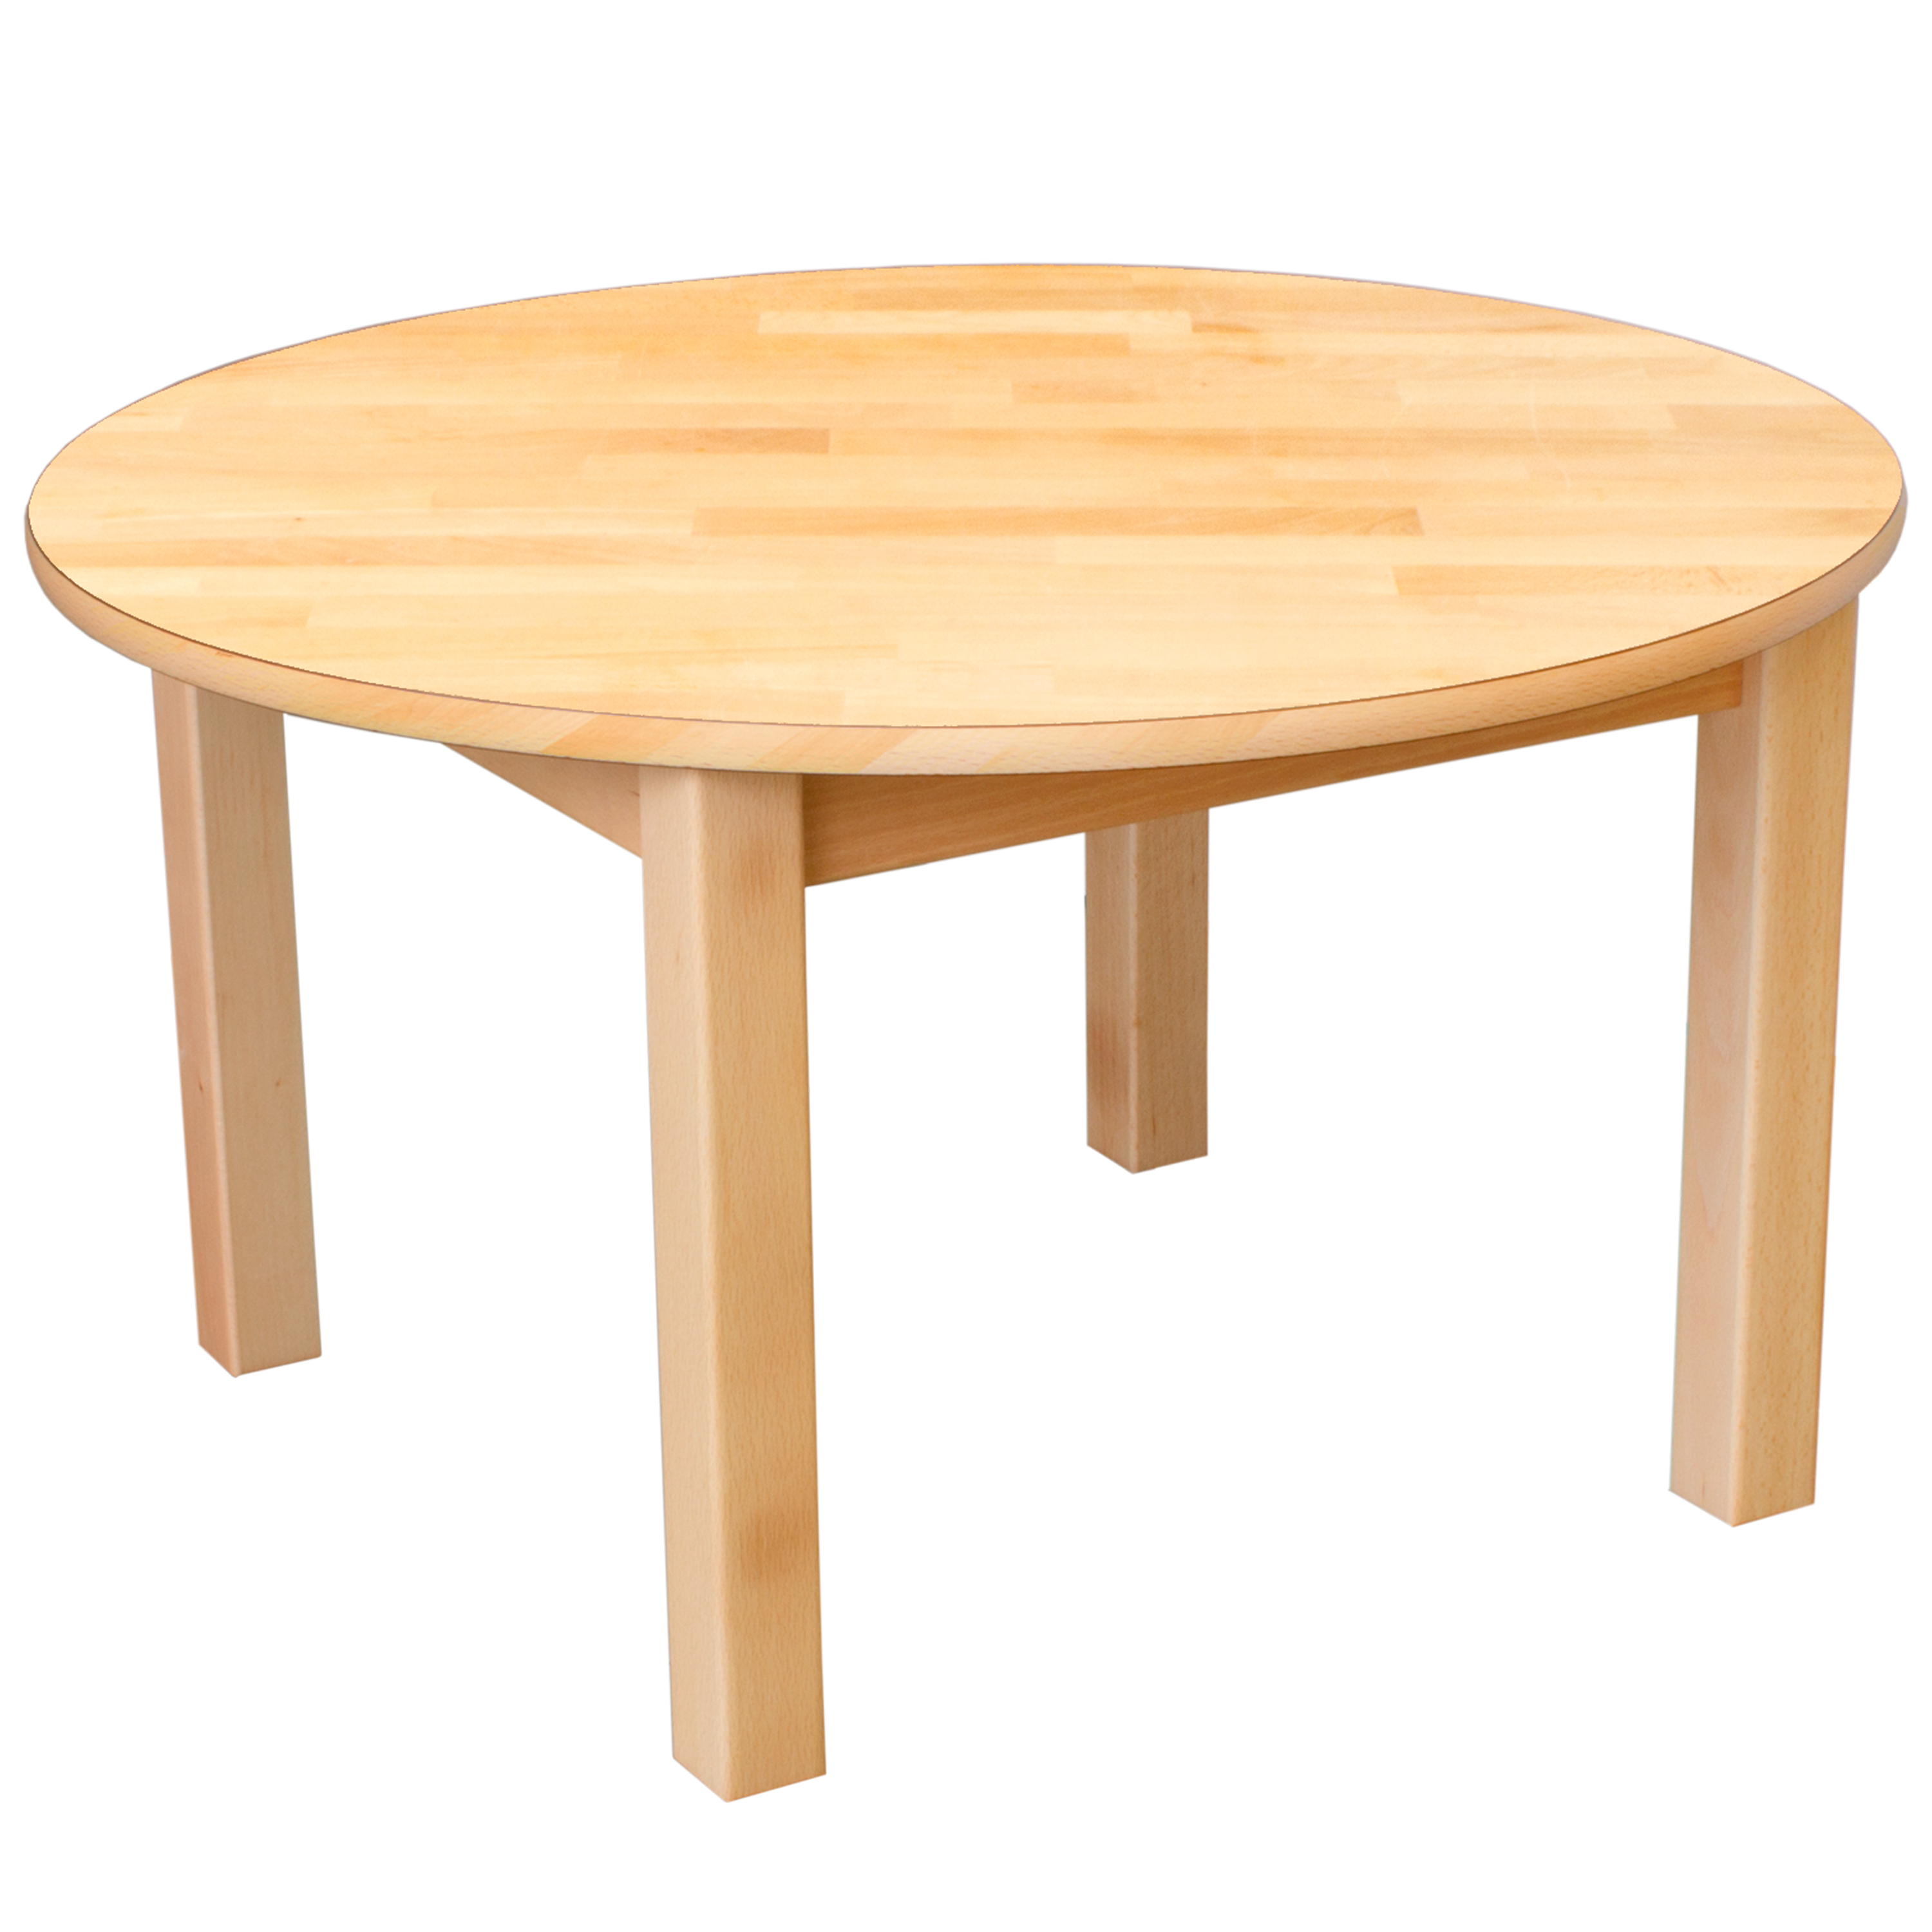 Runder Tisch aus Massivholz, Ø 120 cm,Tischhöhe 40 cm